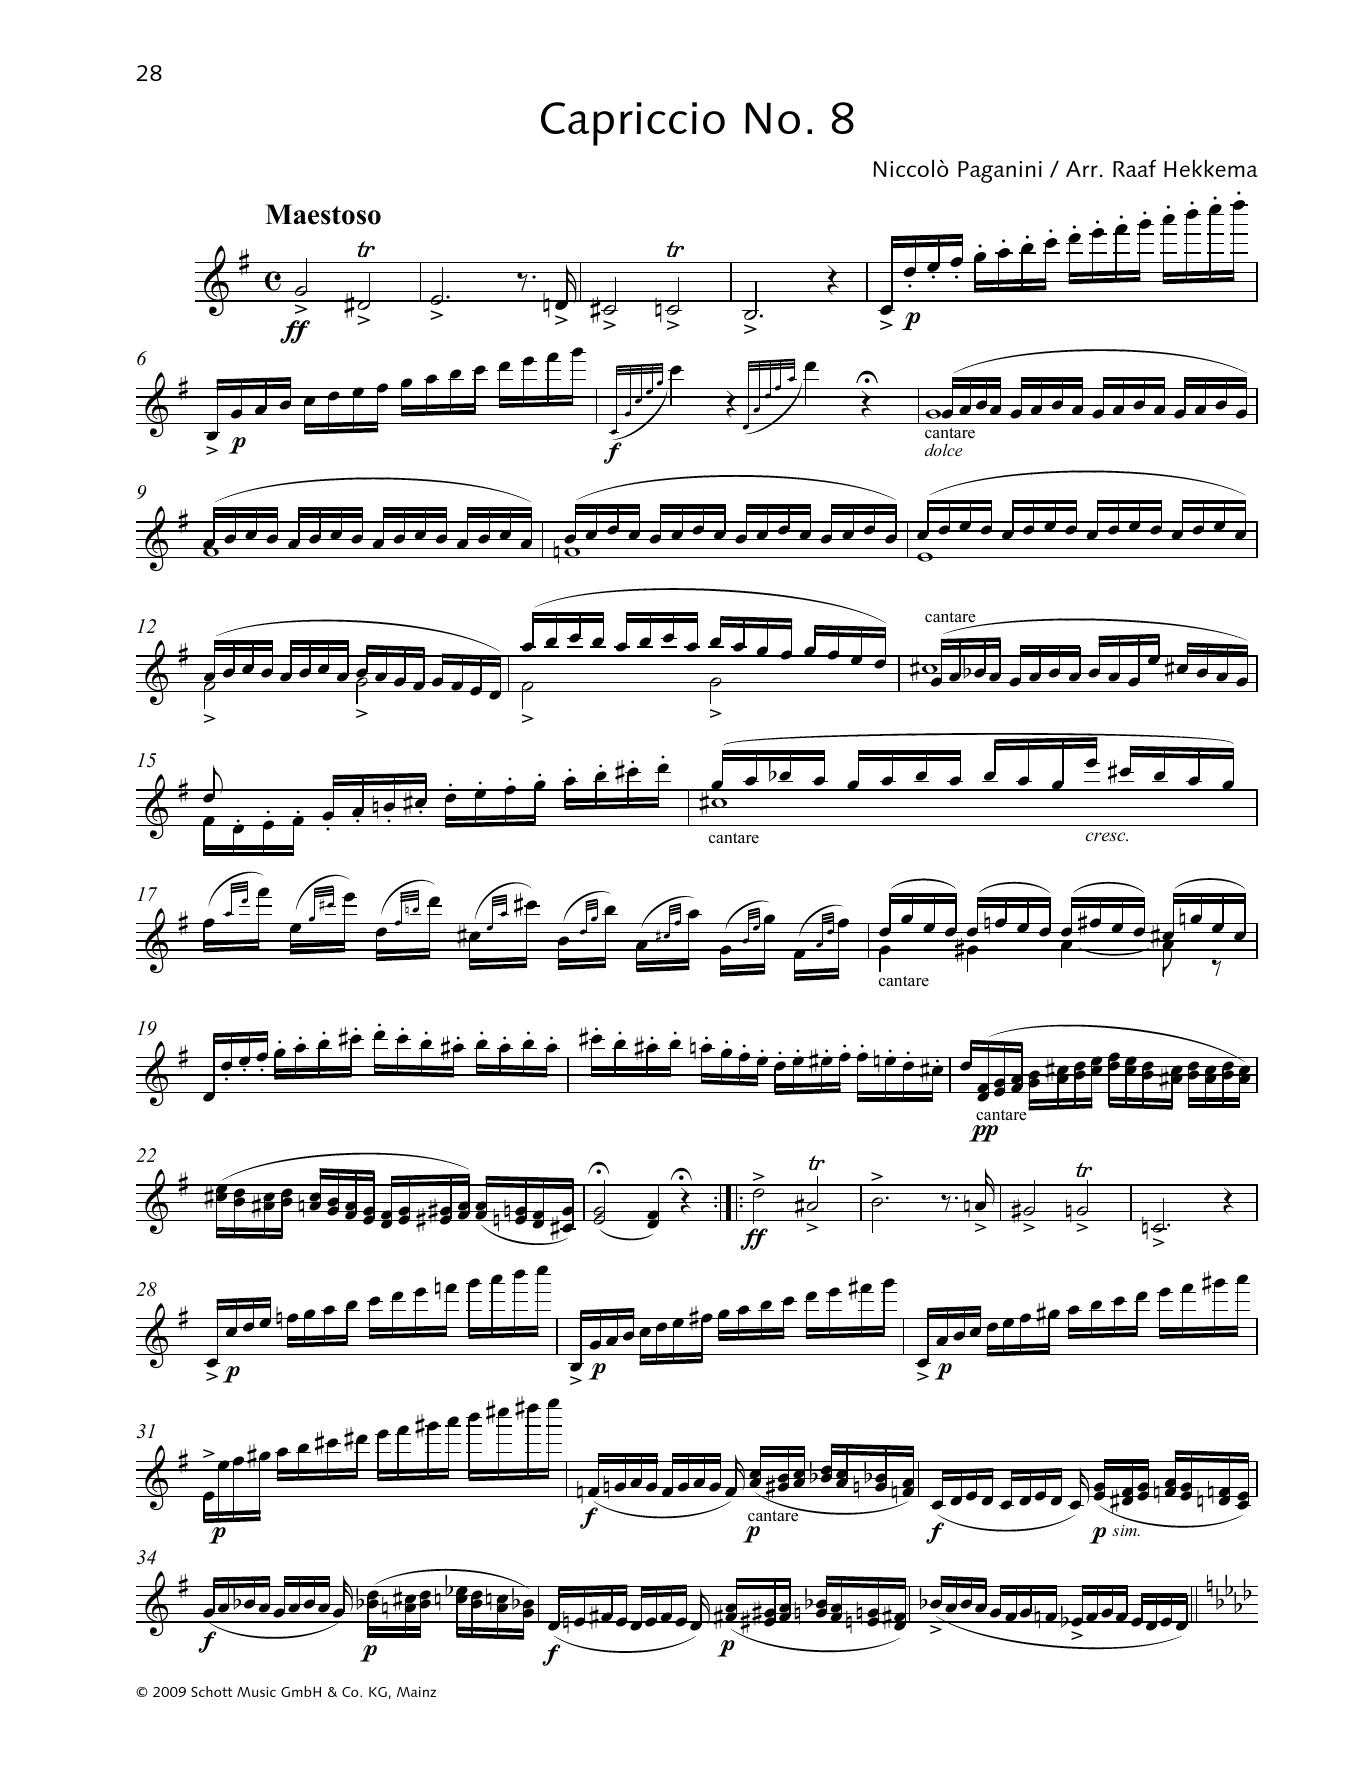 Download Niccolo Paganini Capriccio No. 8 Sheet Music